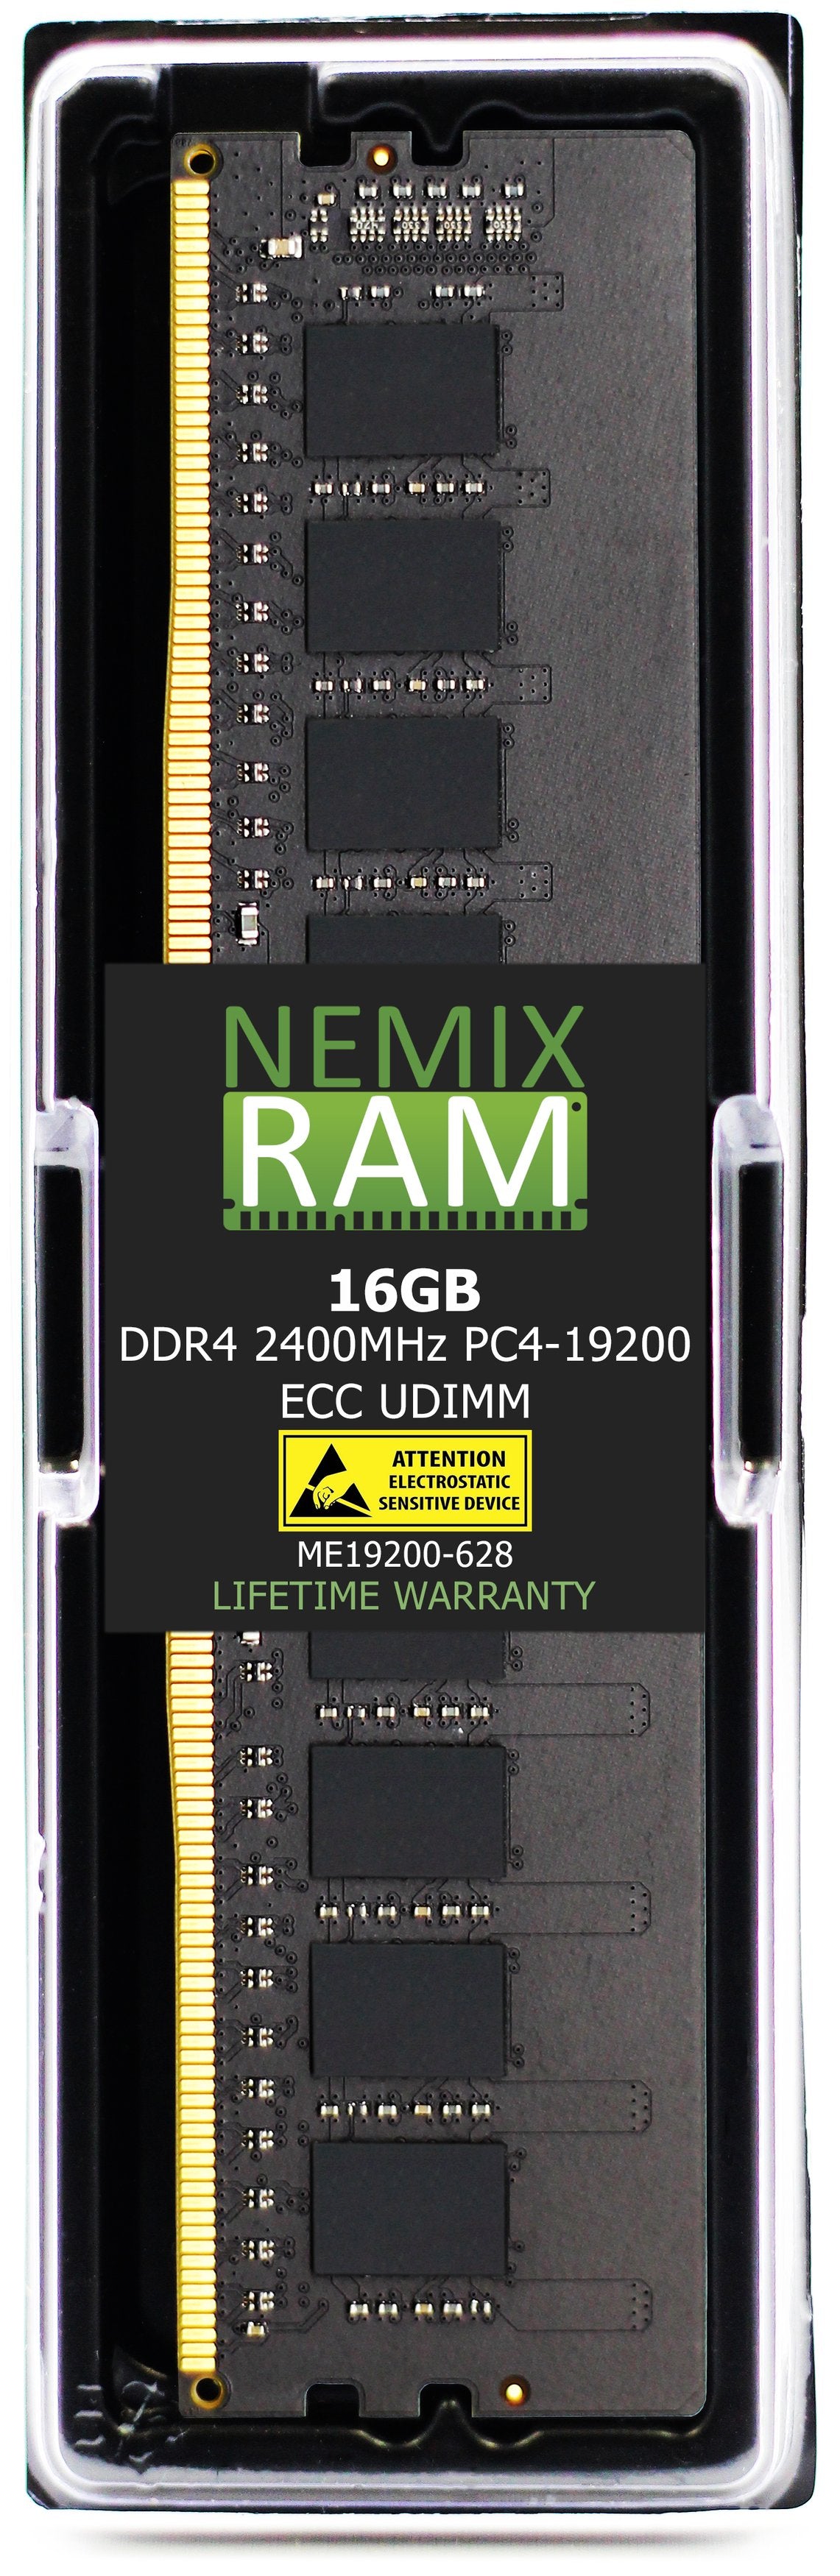 16GB DDR4 2400MHZ PC4-19200 VLP ECC UDIMM Compatible with Supermicro MEM-DR416L-HV01-EU24